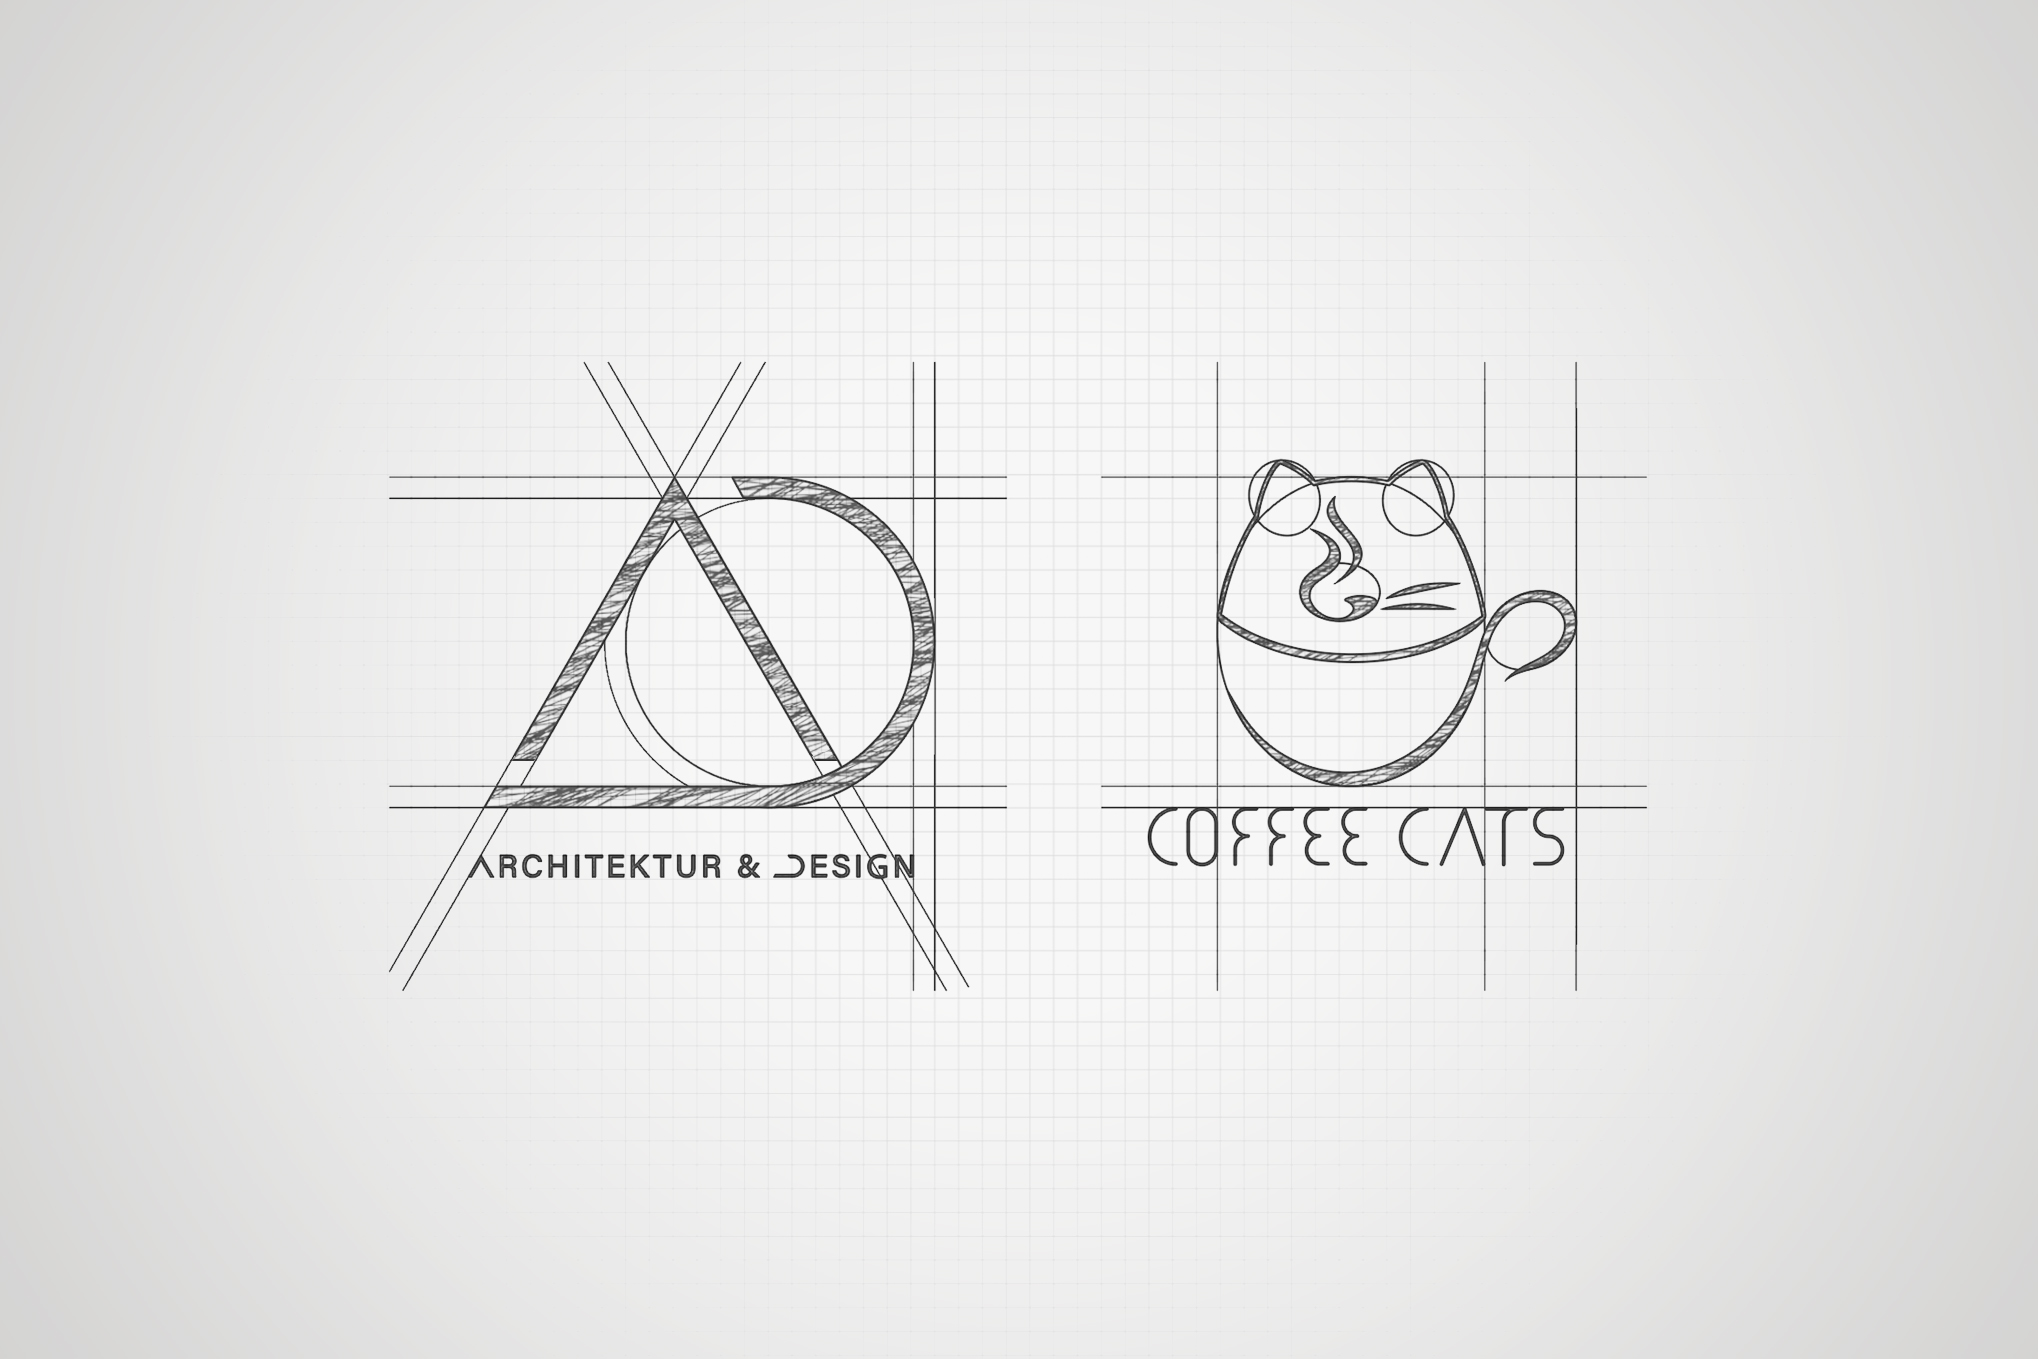 Logo Architektur und Design & Coffee Cats